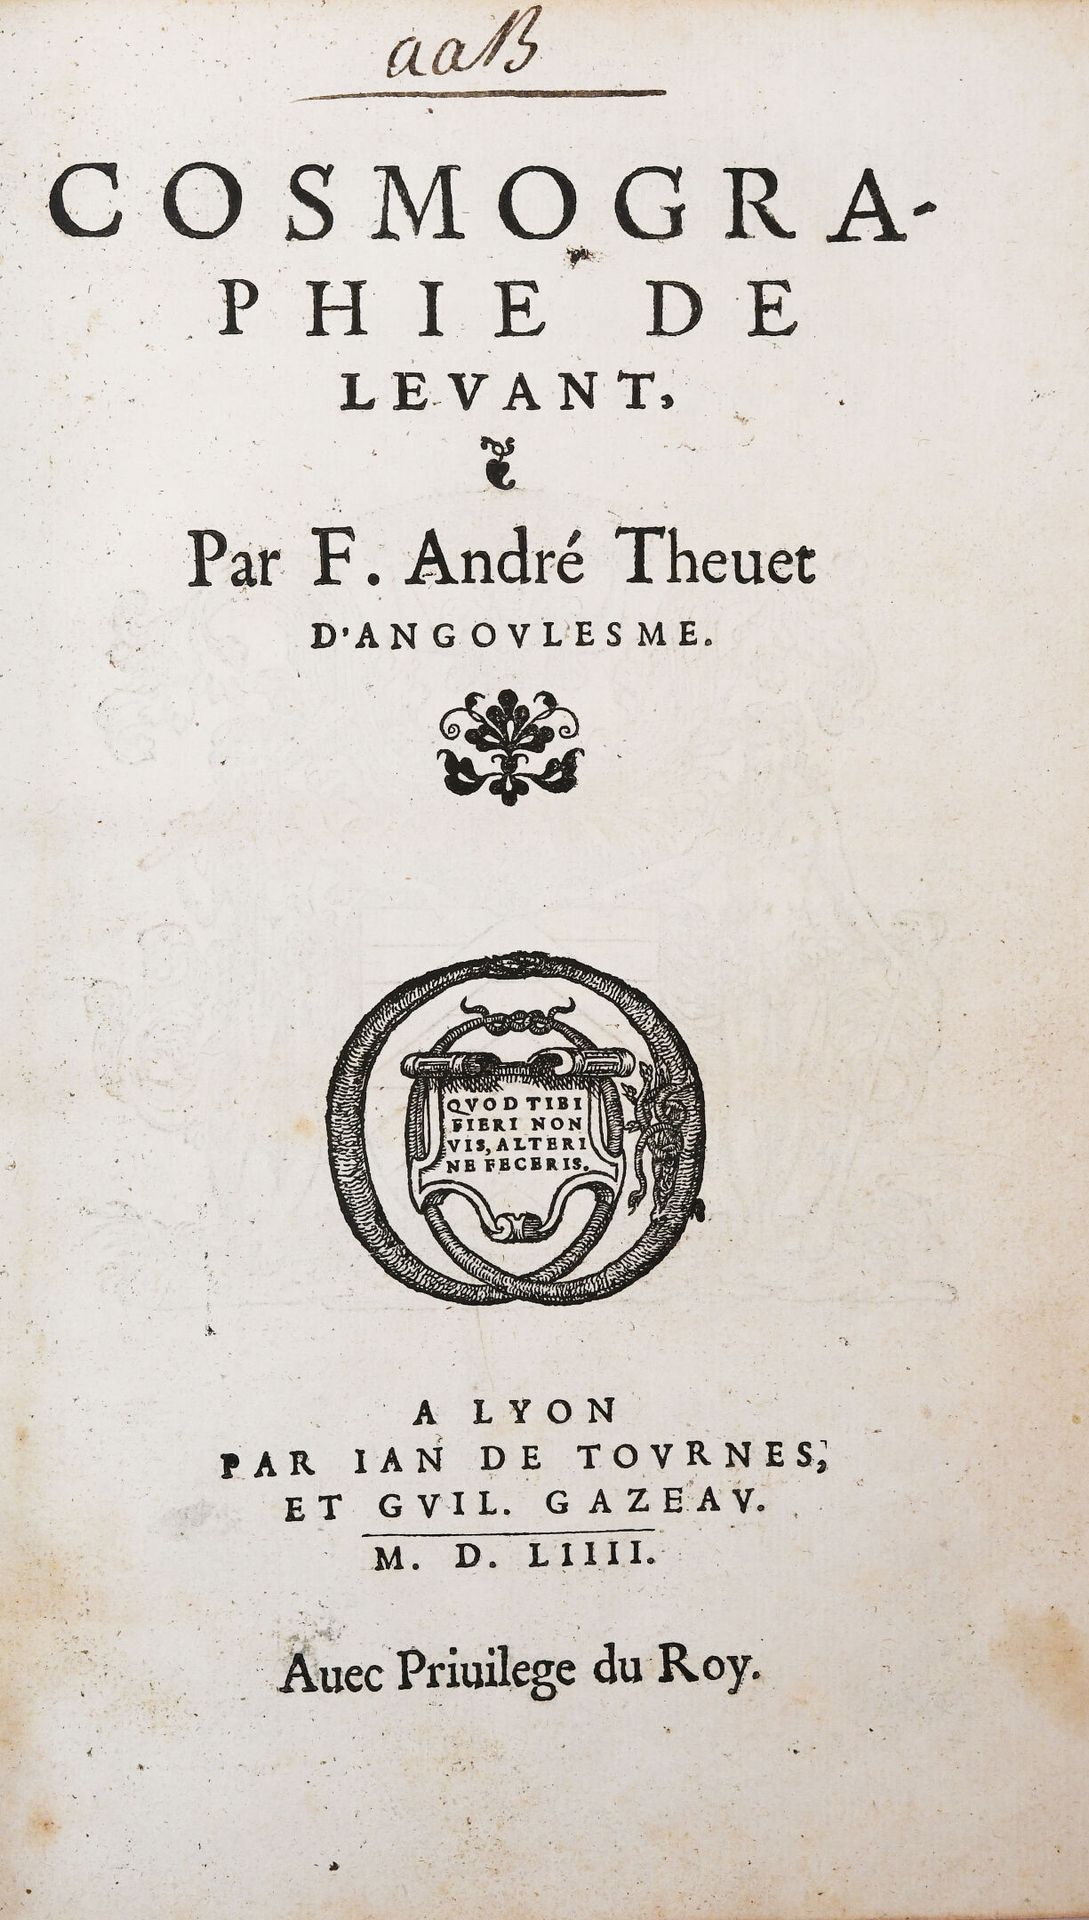 Null [旅行-海军]。THEVET (André).黎凡特的宇宙观。 
里昂，Jean de Tournes和Guillaume Gazeau，1554年。&hellip;